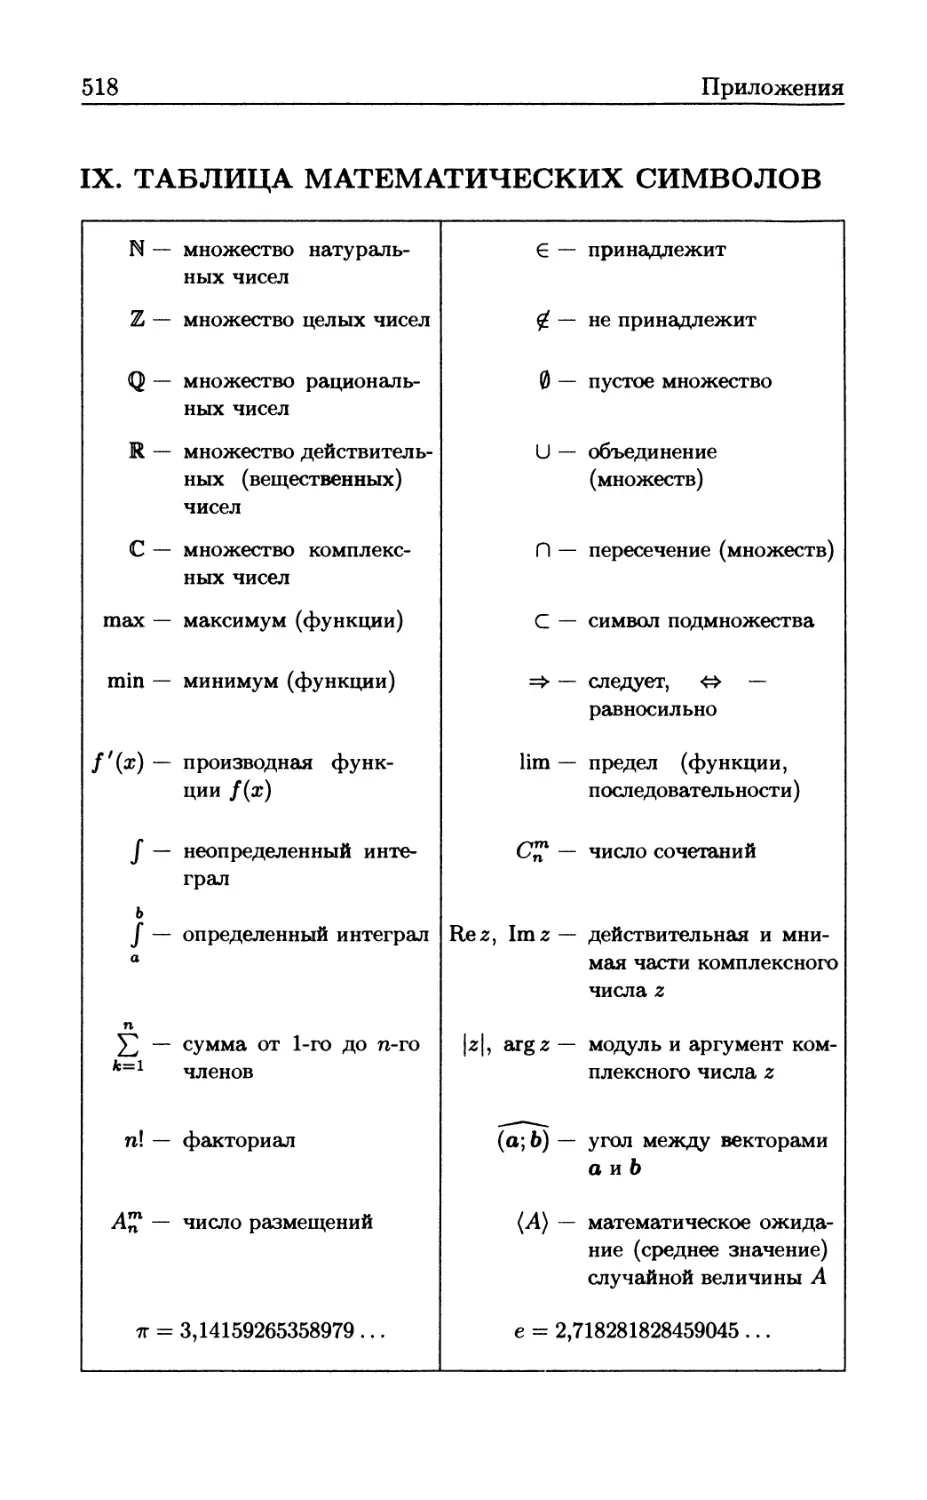 IX Таблица математических символов